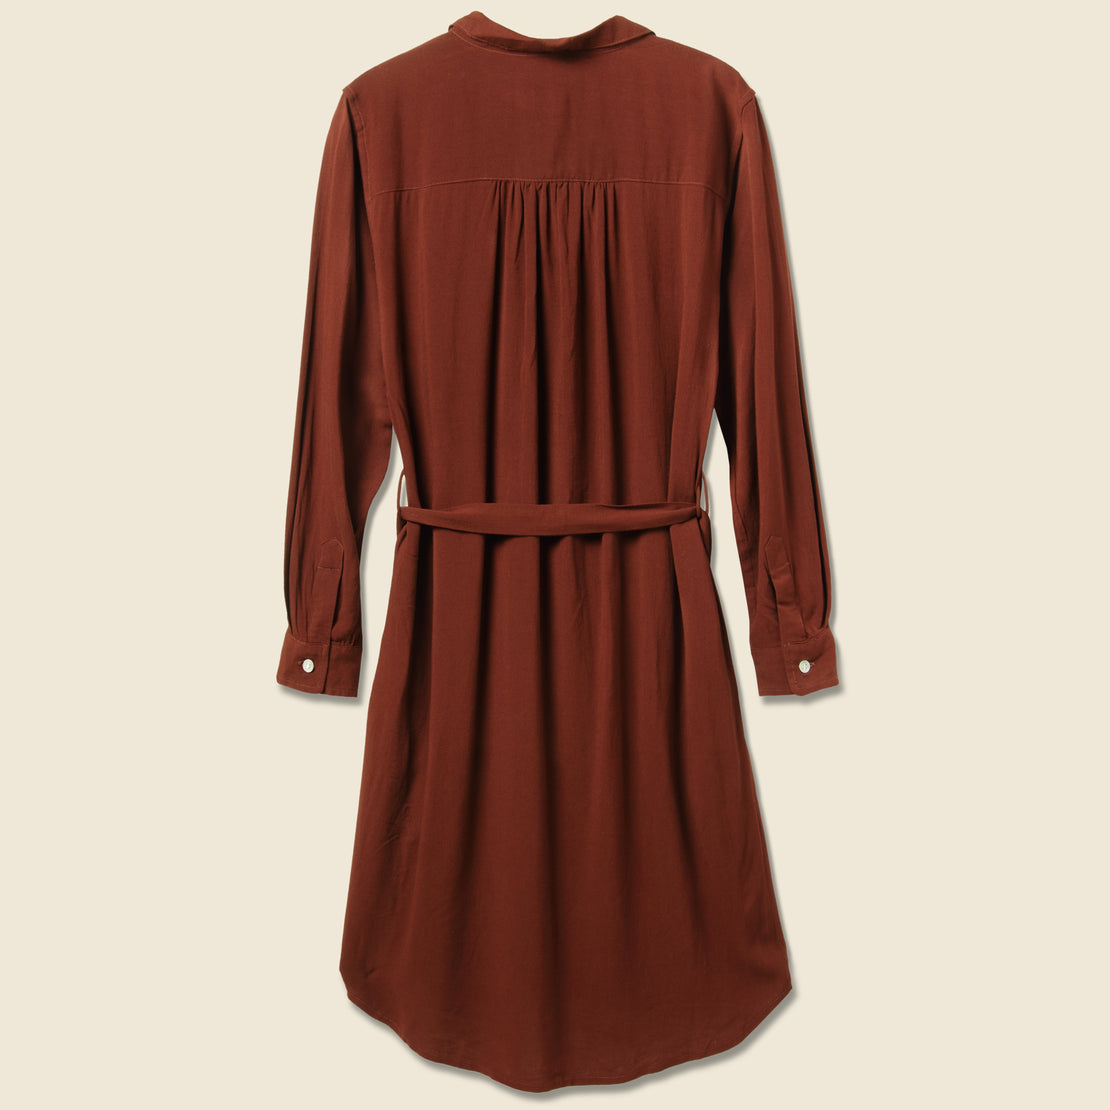 Emery Dress - Burgundy - Bridge & Burn - STAG Provisions - W - Onepiece - Dress